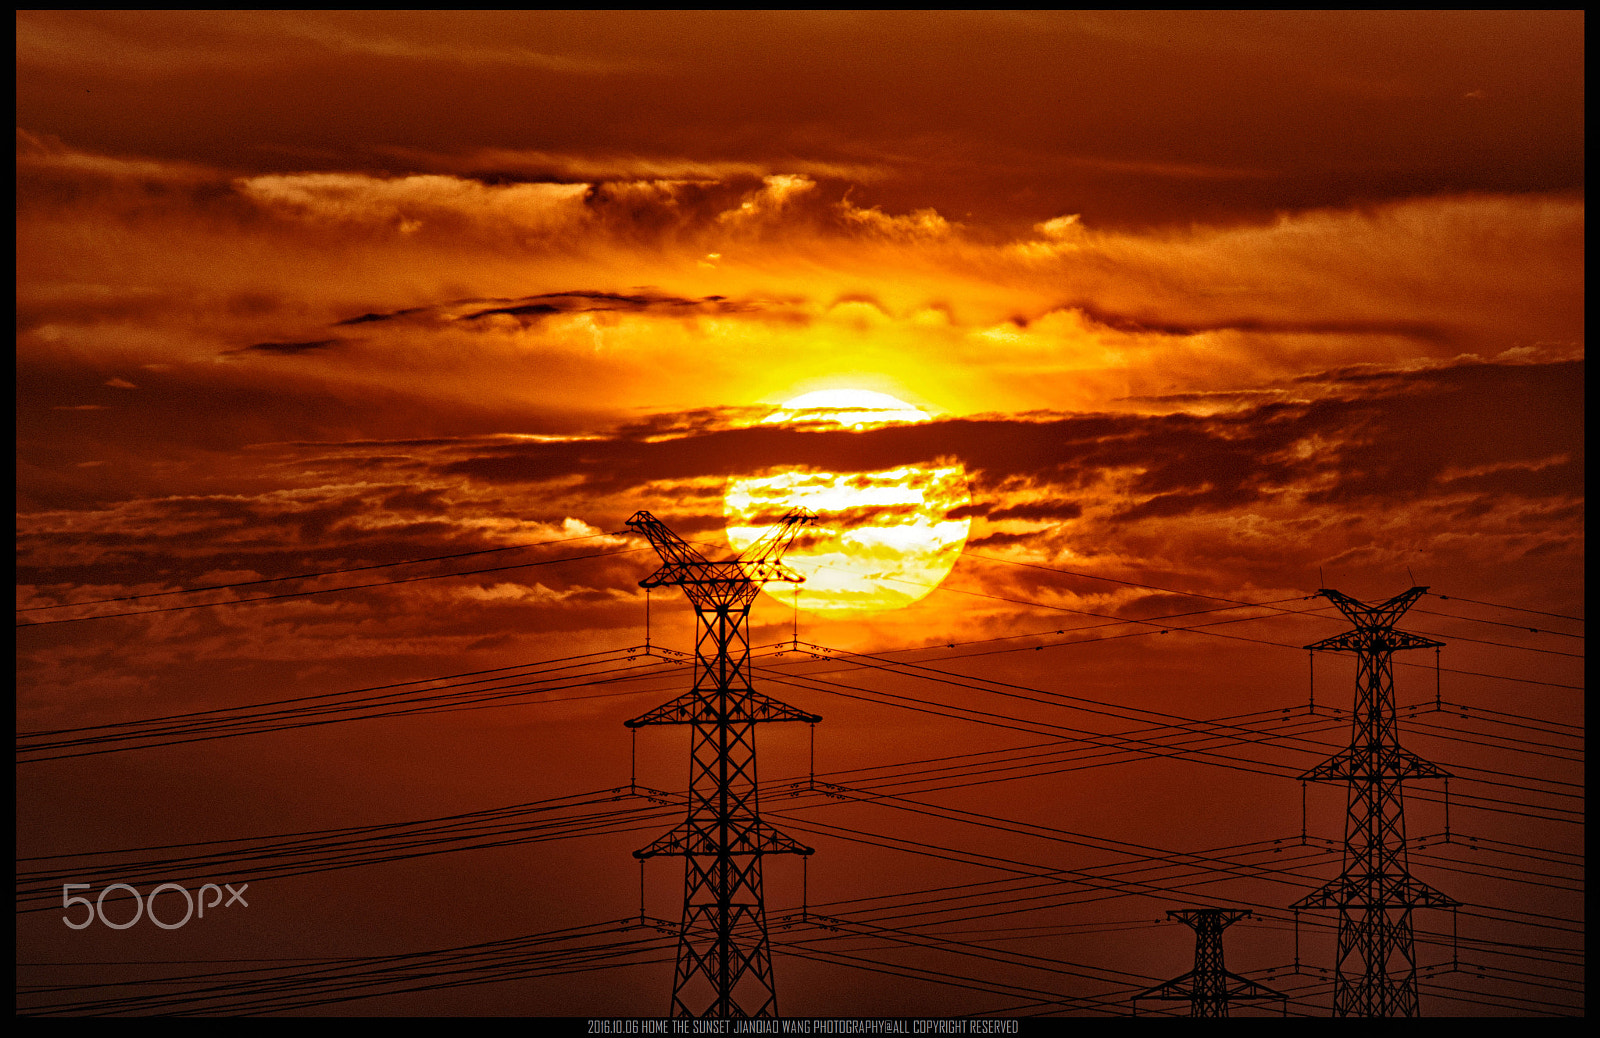 Nikon D7000 + AF Zoom-Nikkor 75-300mm f/4.5-5.6 sample photo. The sunset photography